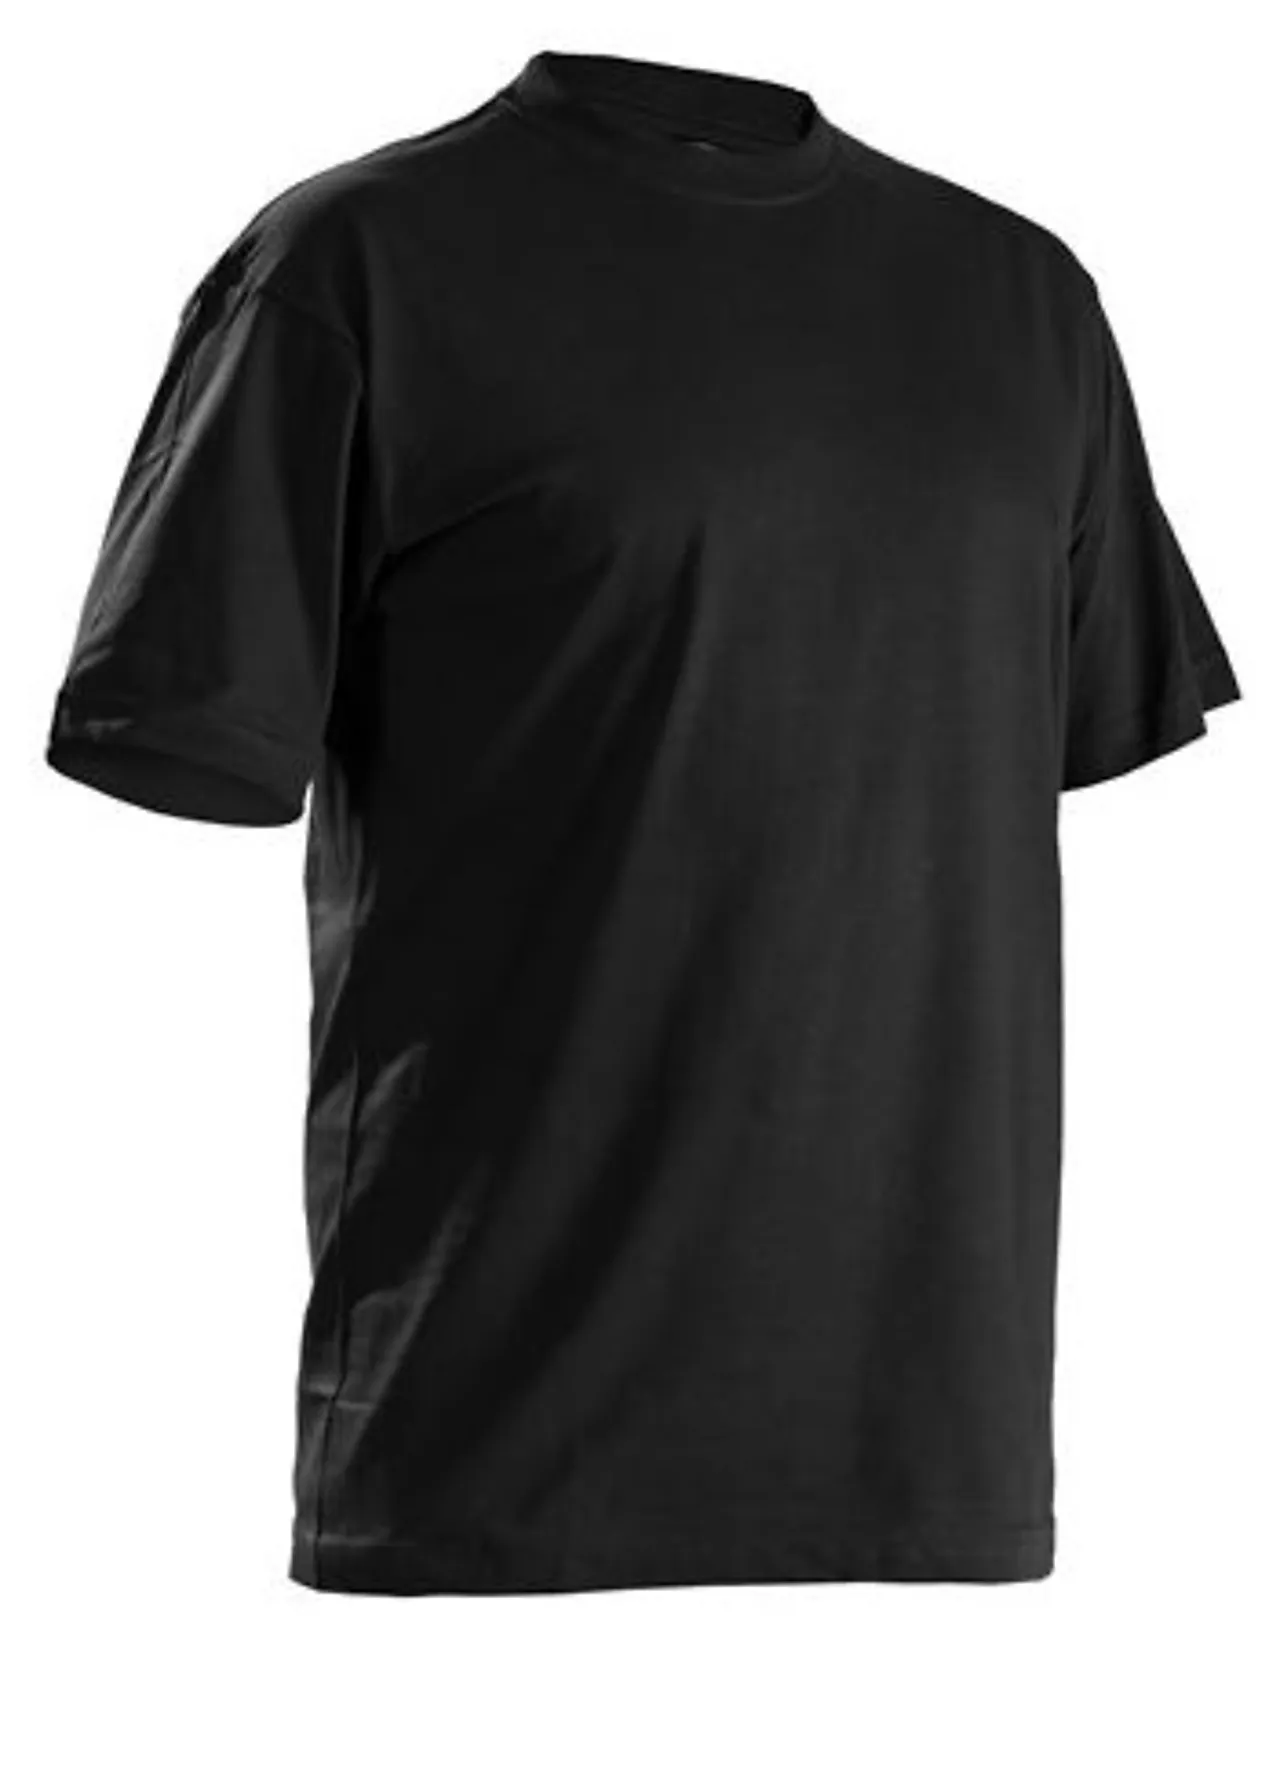 T-skjorte 5 pakk 332510429900m 5 pakk svart null - null - 2 - Miniatyr